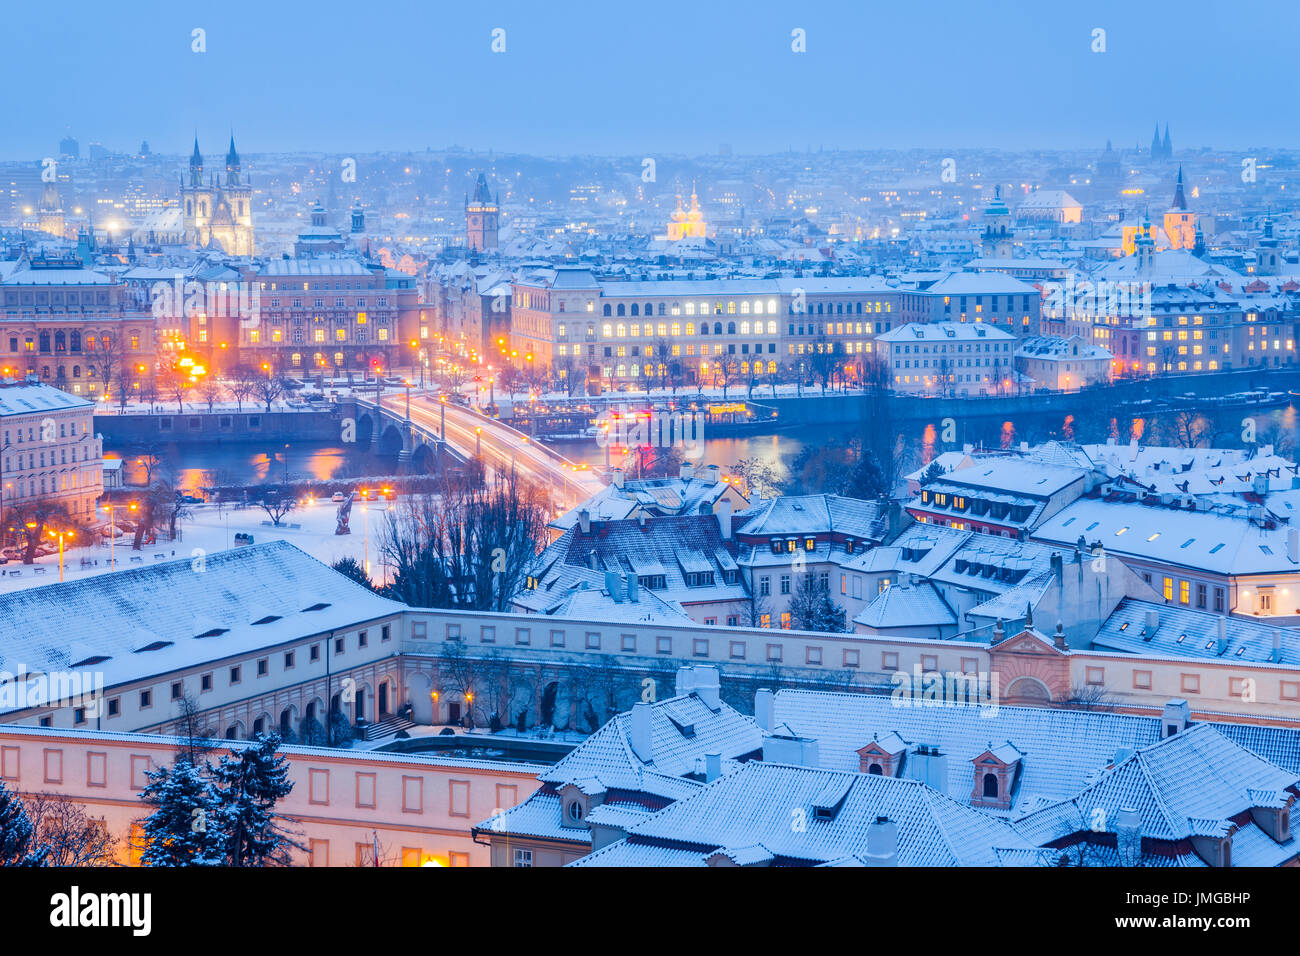 Europa, Tschechische Republik, Tschechien, Prag, Praha, UNESCO, historische alte Stadt Panorama mit Kirche erhebt sich im Winter mit Schnee in der Nacht, Dämmerung Stockfoto